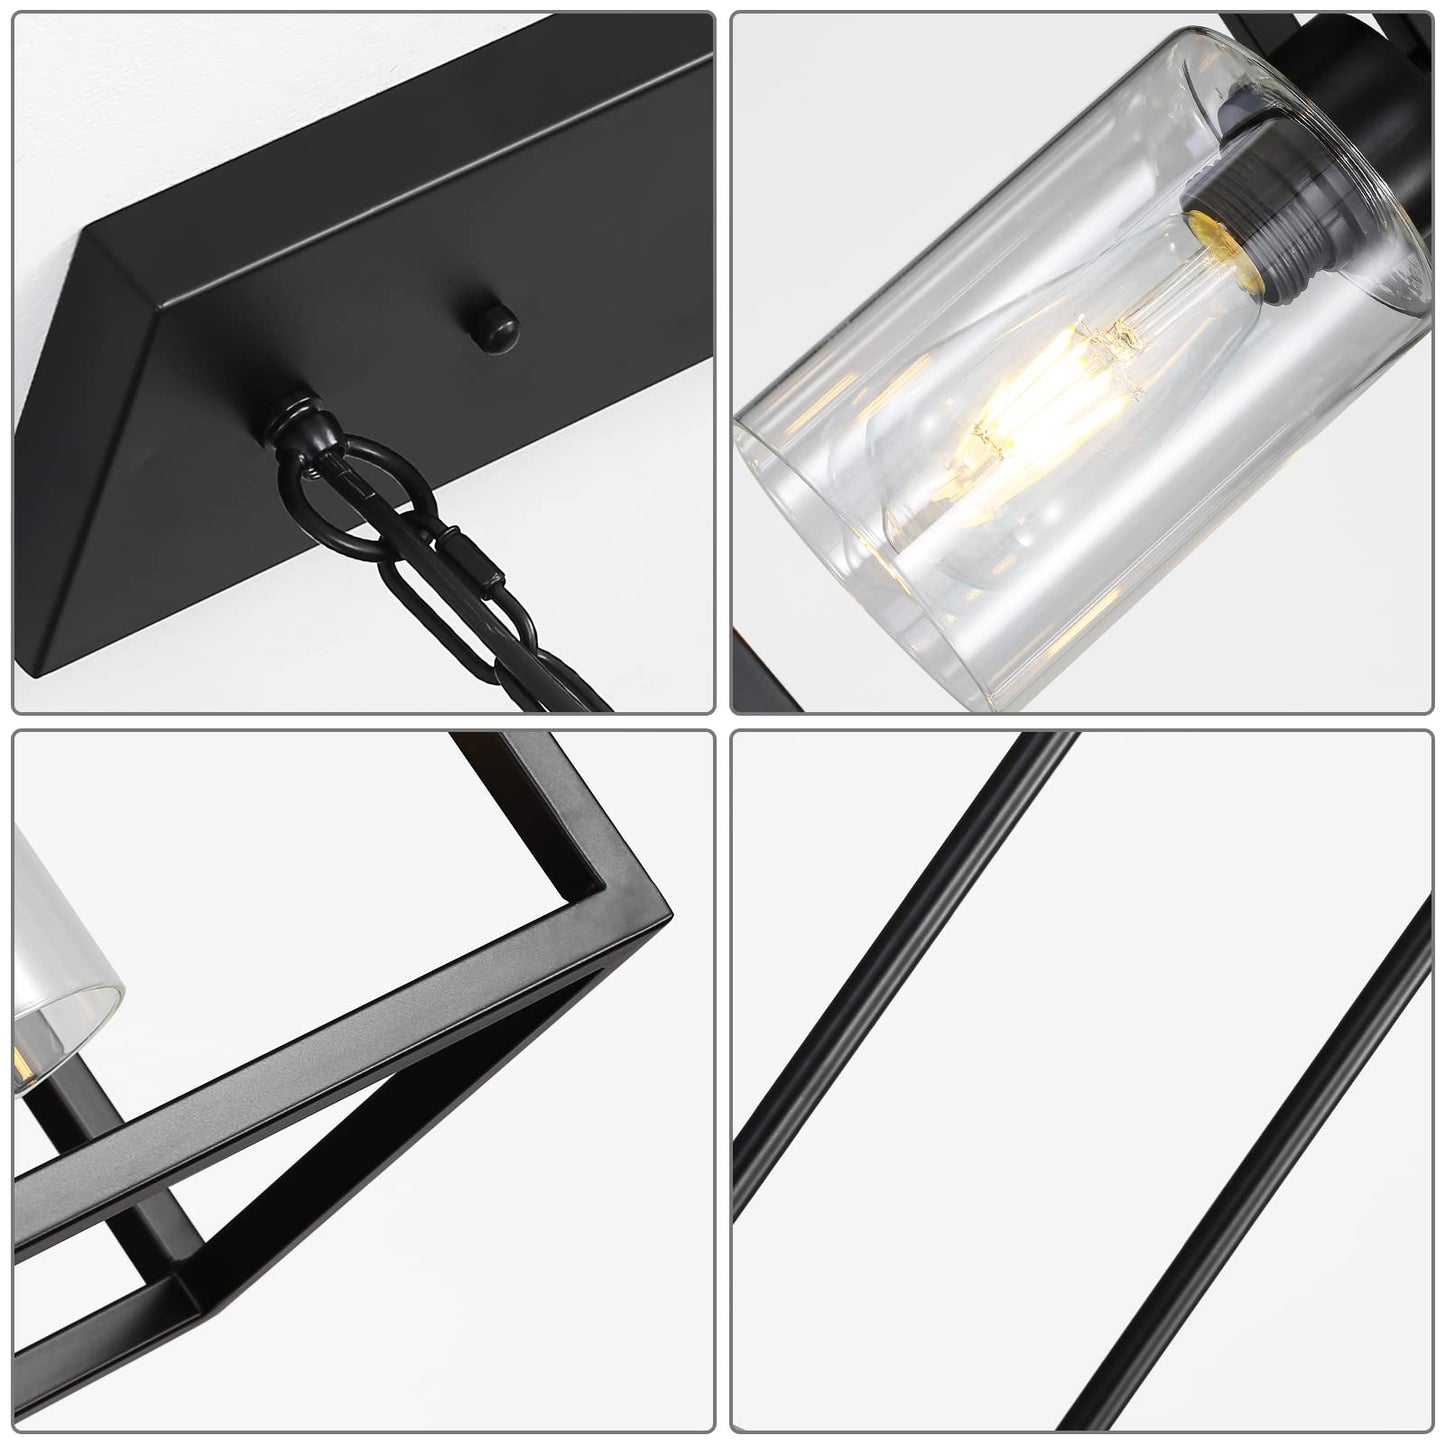 Black Industrial Chandelier Light Fixture Height Adjustable Linear Rectangular Kitchen Island Lighting